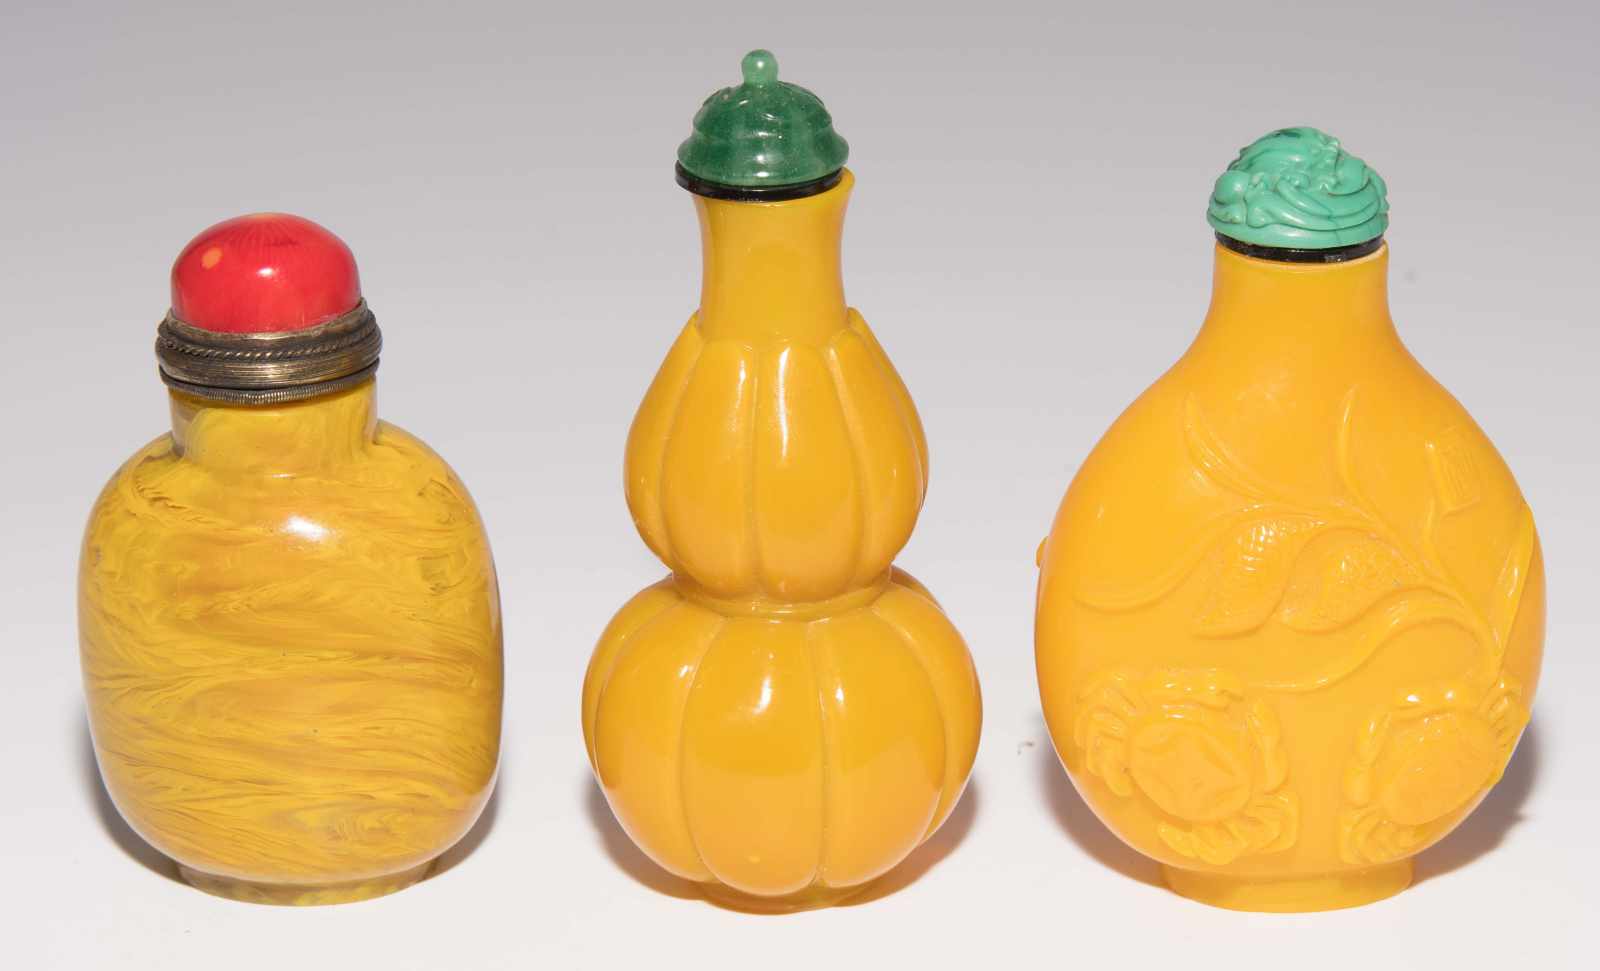 7 Glas Snuff BottlesChina. Halbtransparentes bis opakes Glas in verschiedenen Gelbtönen. H 5–8 cm. - Image 15 of 21